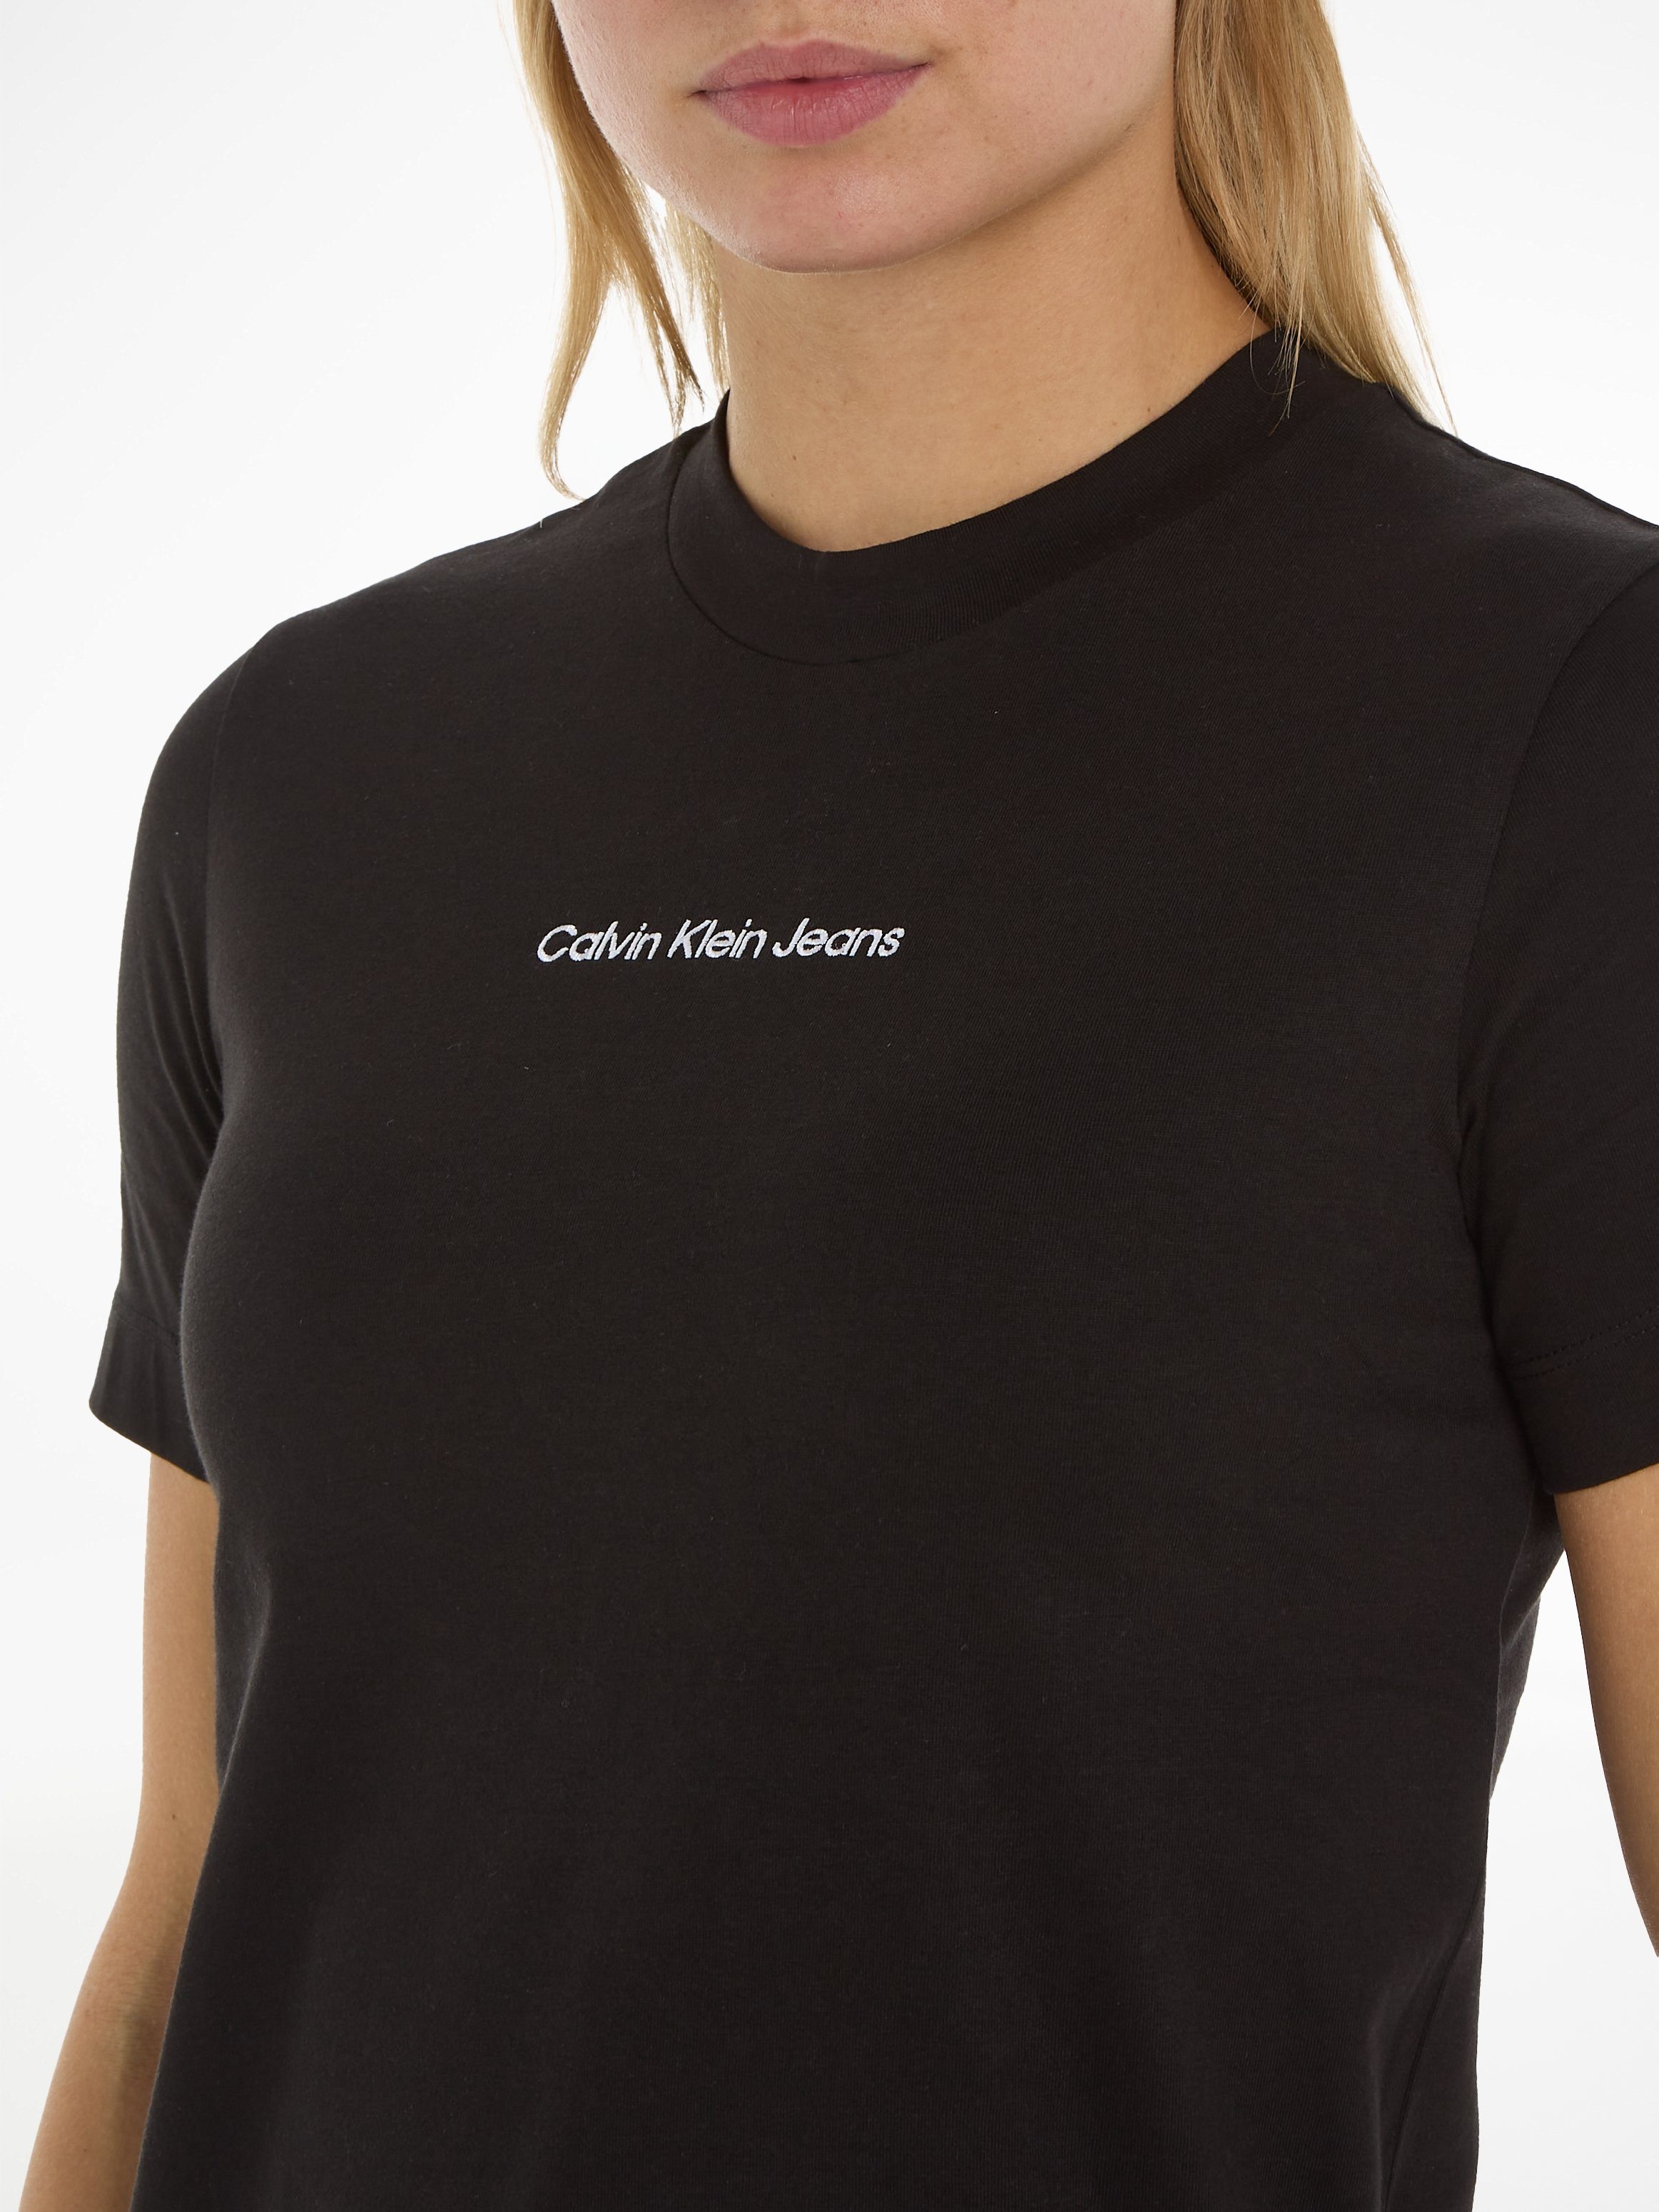 Calvin Klein Jeans T-Shirt Markenlabel Ck mit STRAIGHT INSTITUTIONAL Black TEE